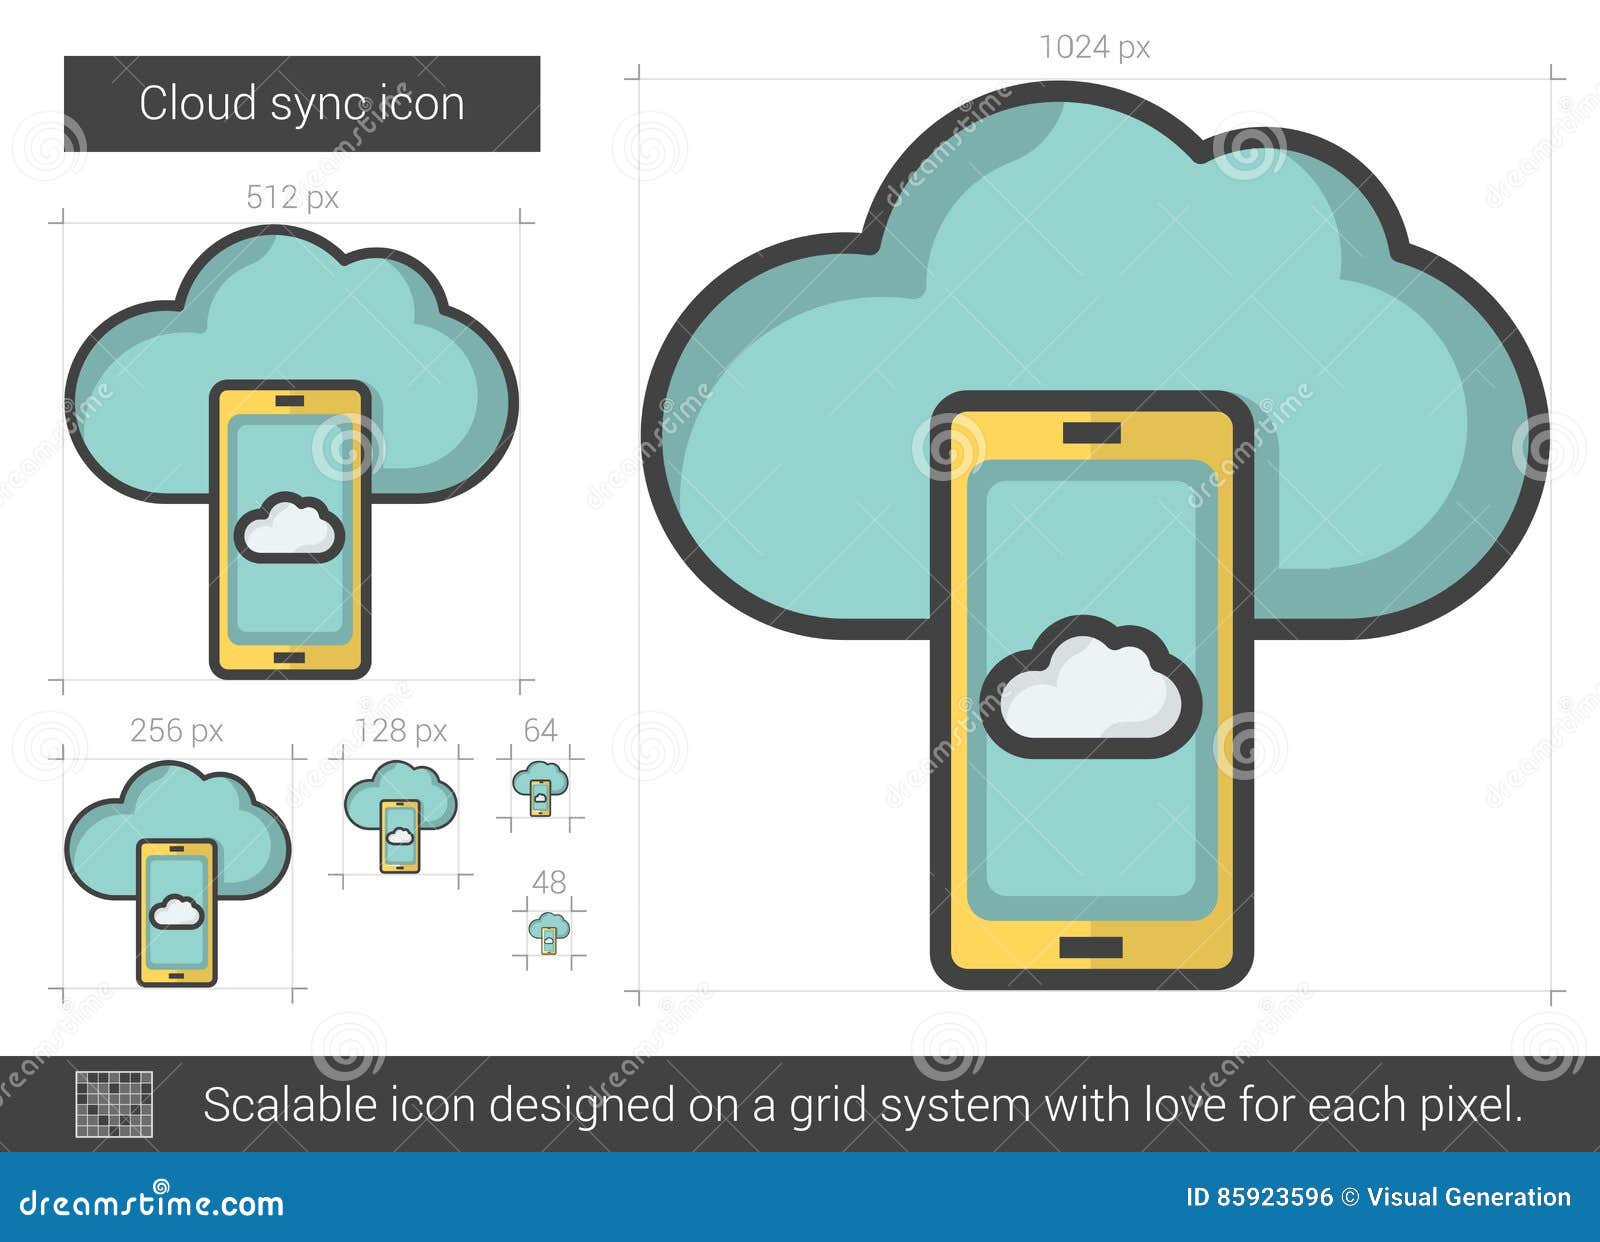 Облако на телефоне самсунг. Cloud sync. Cloud sync icon.